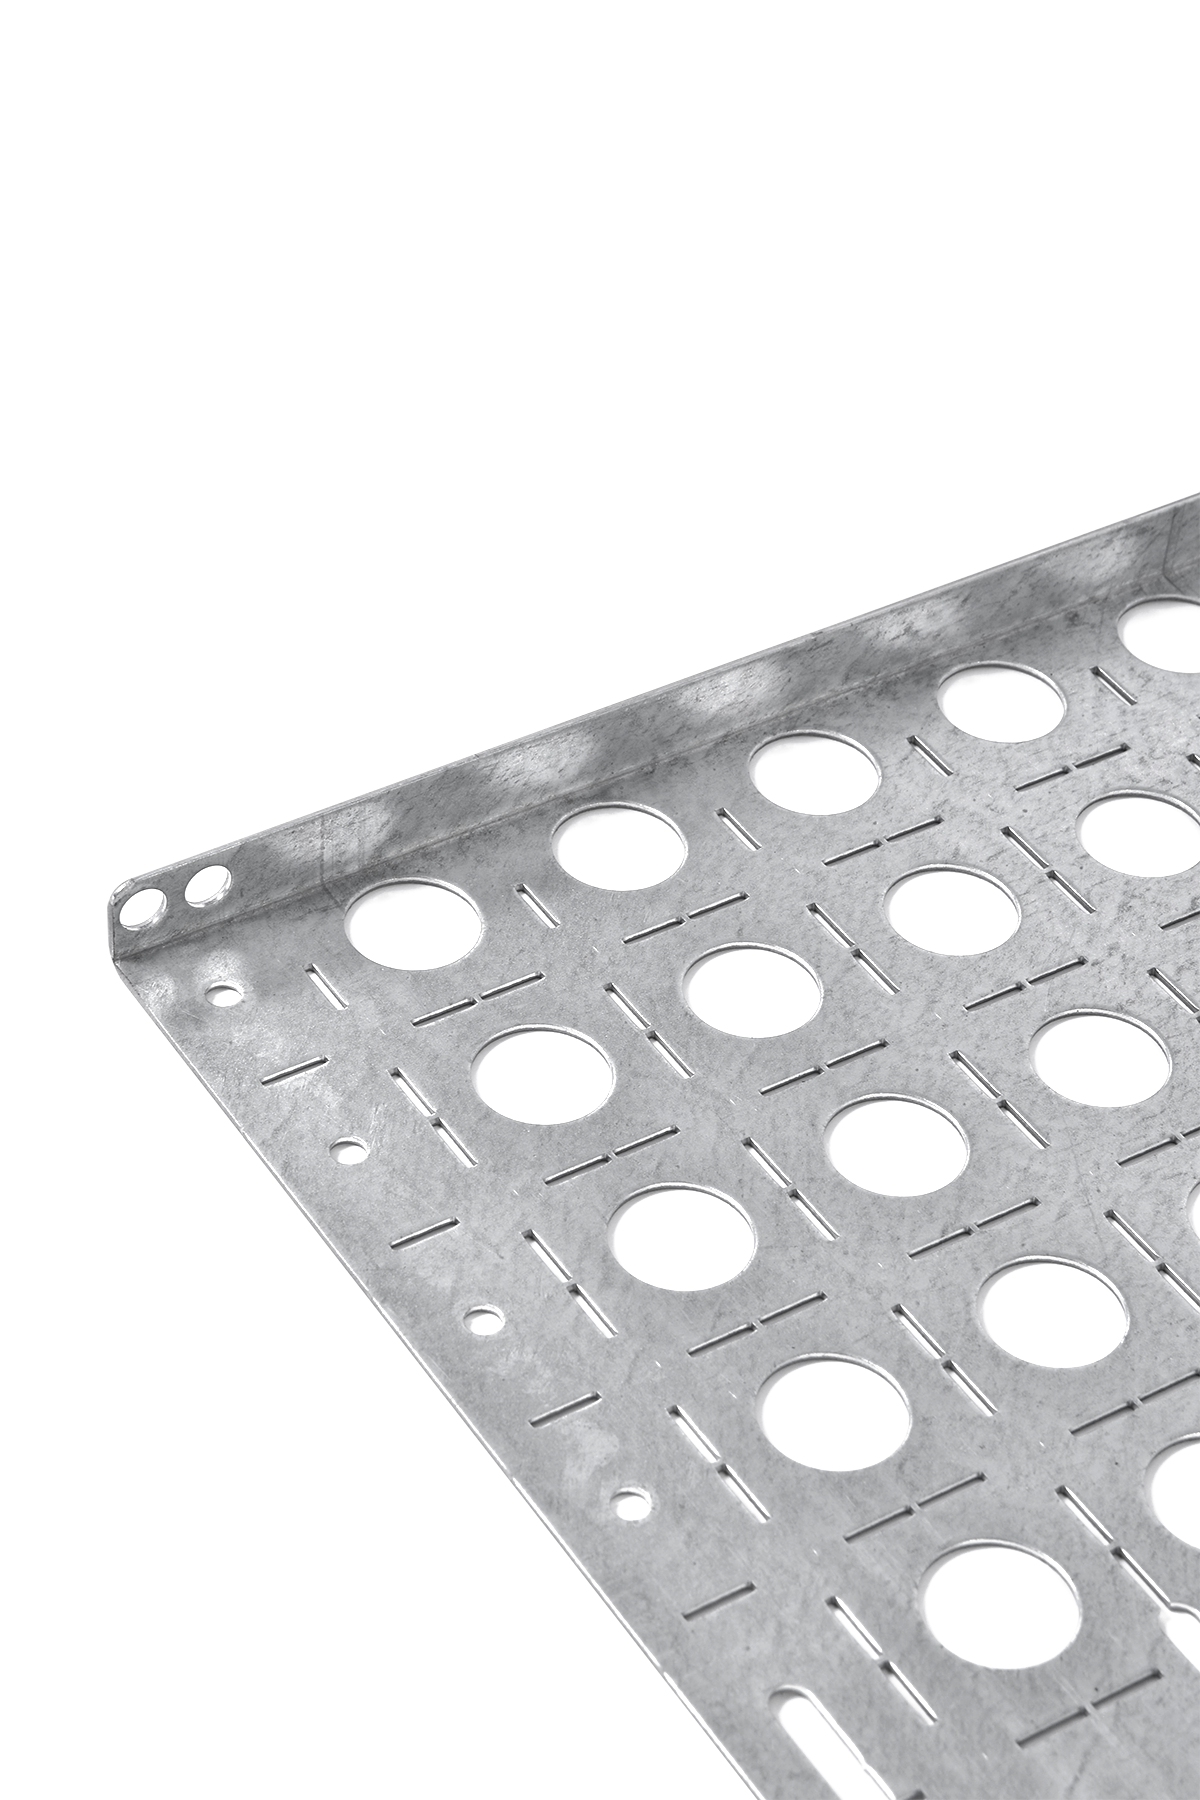 Комплект боковых монтажных панелей 19" (В800 × Г300) с уголками для крепления оборудования от ЦМО